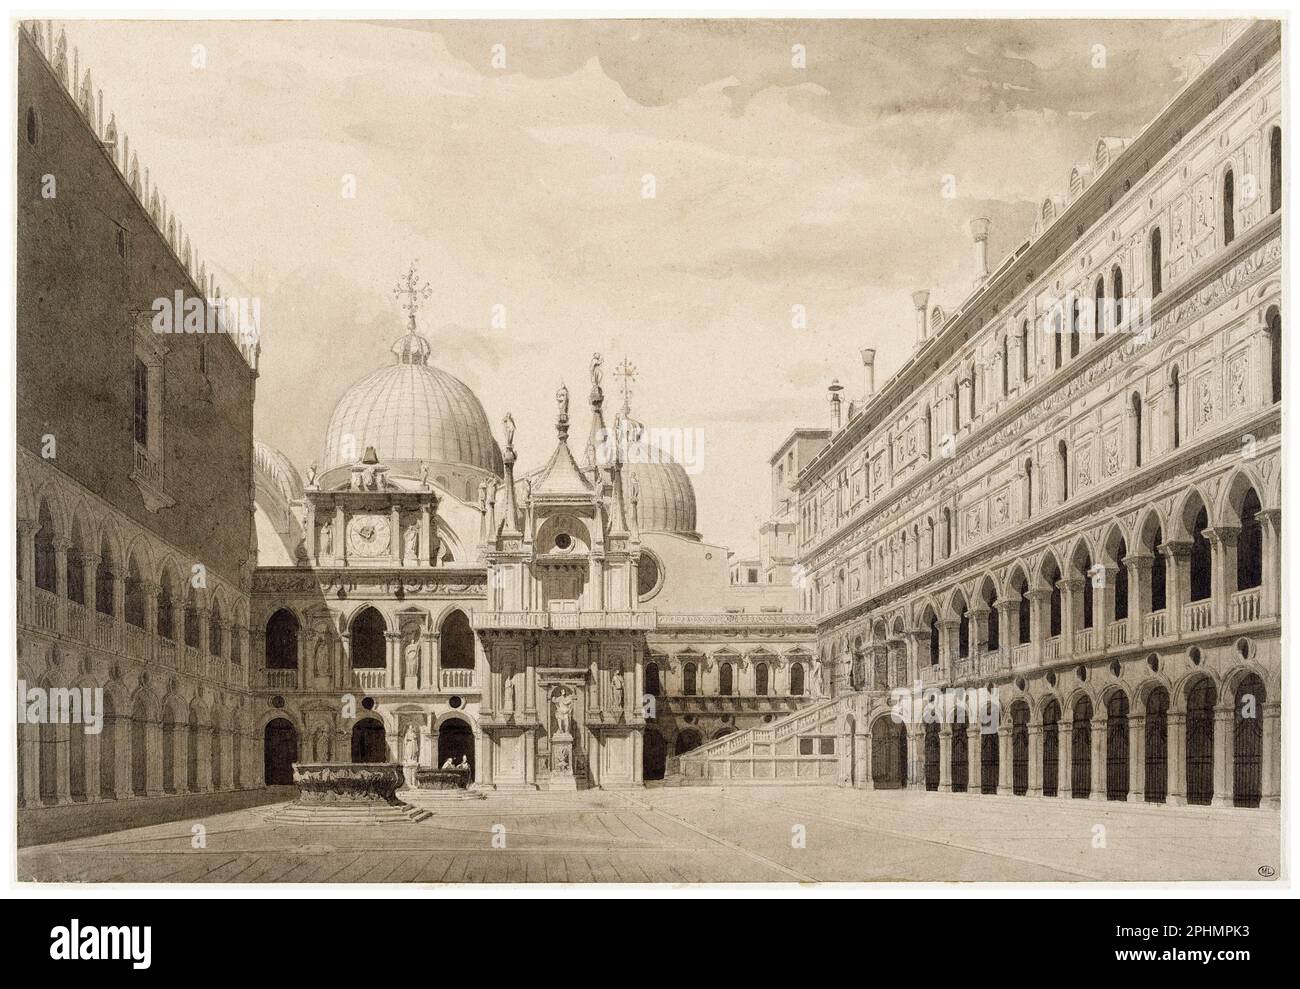 Charles Garnier, cour du palais des Doges à Venise, dessin architectural, 1852 Banque D'Images